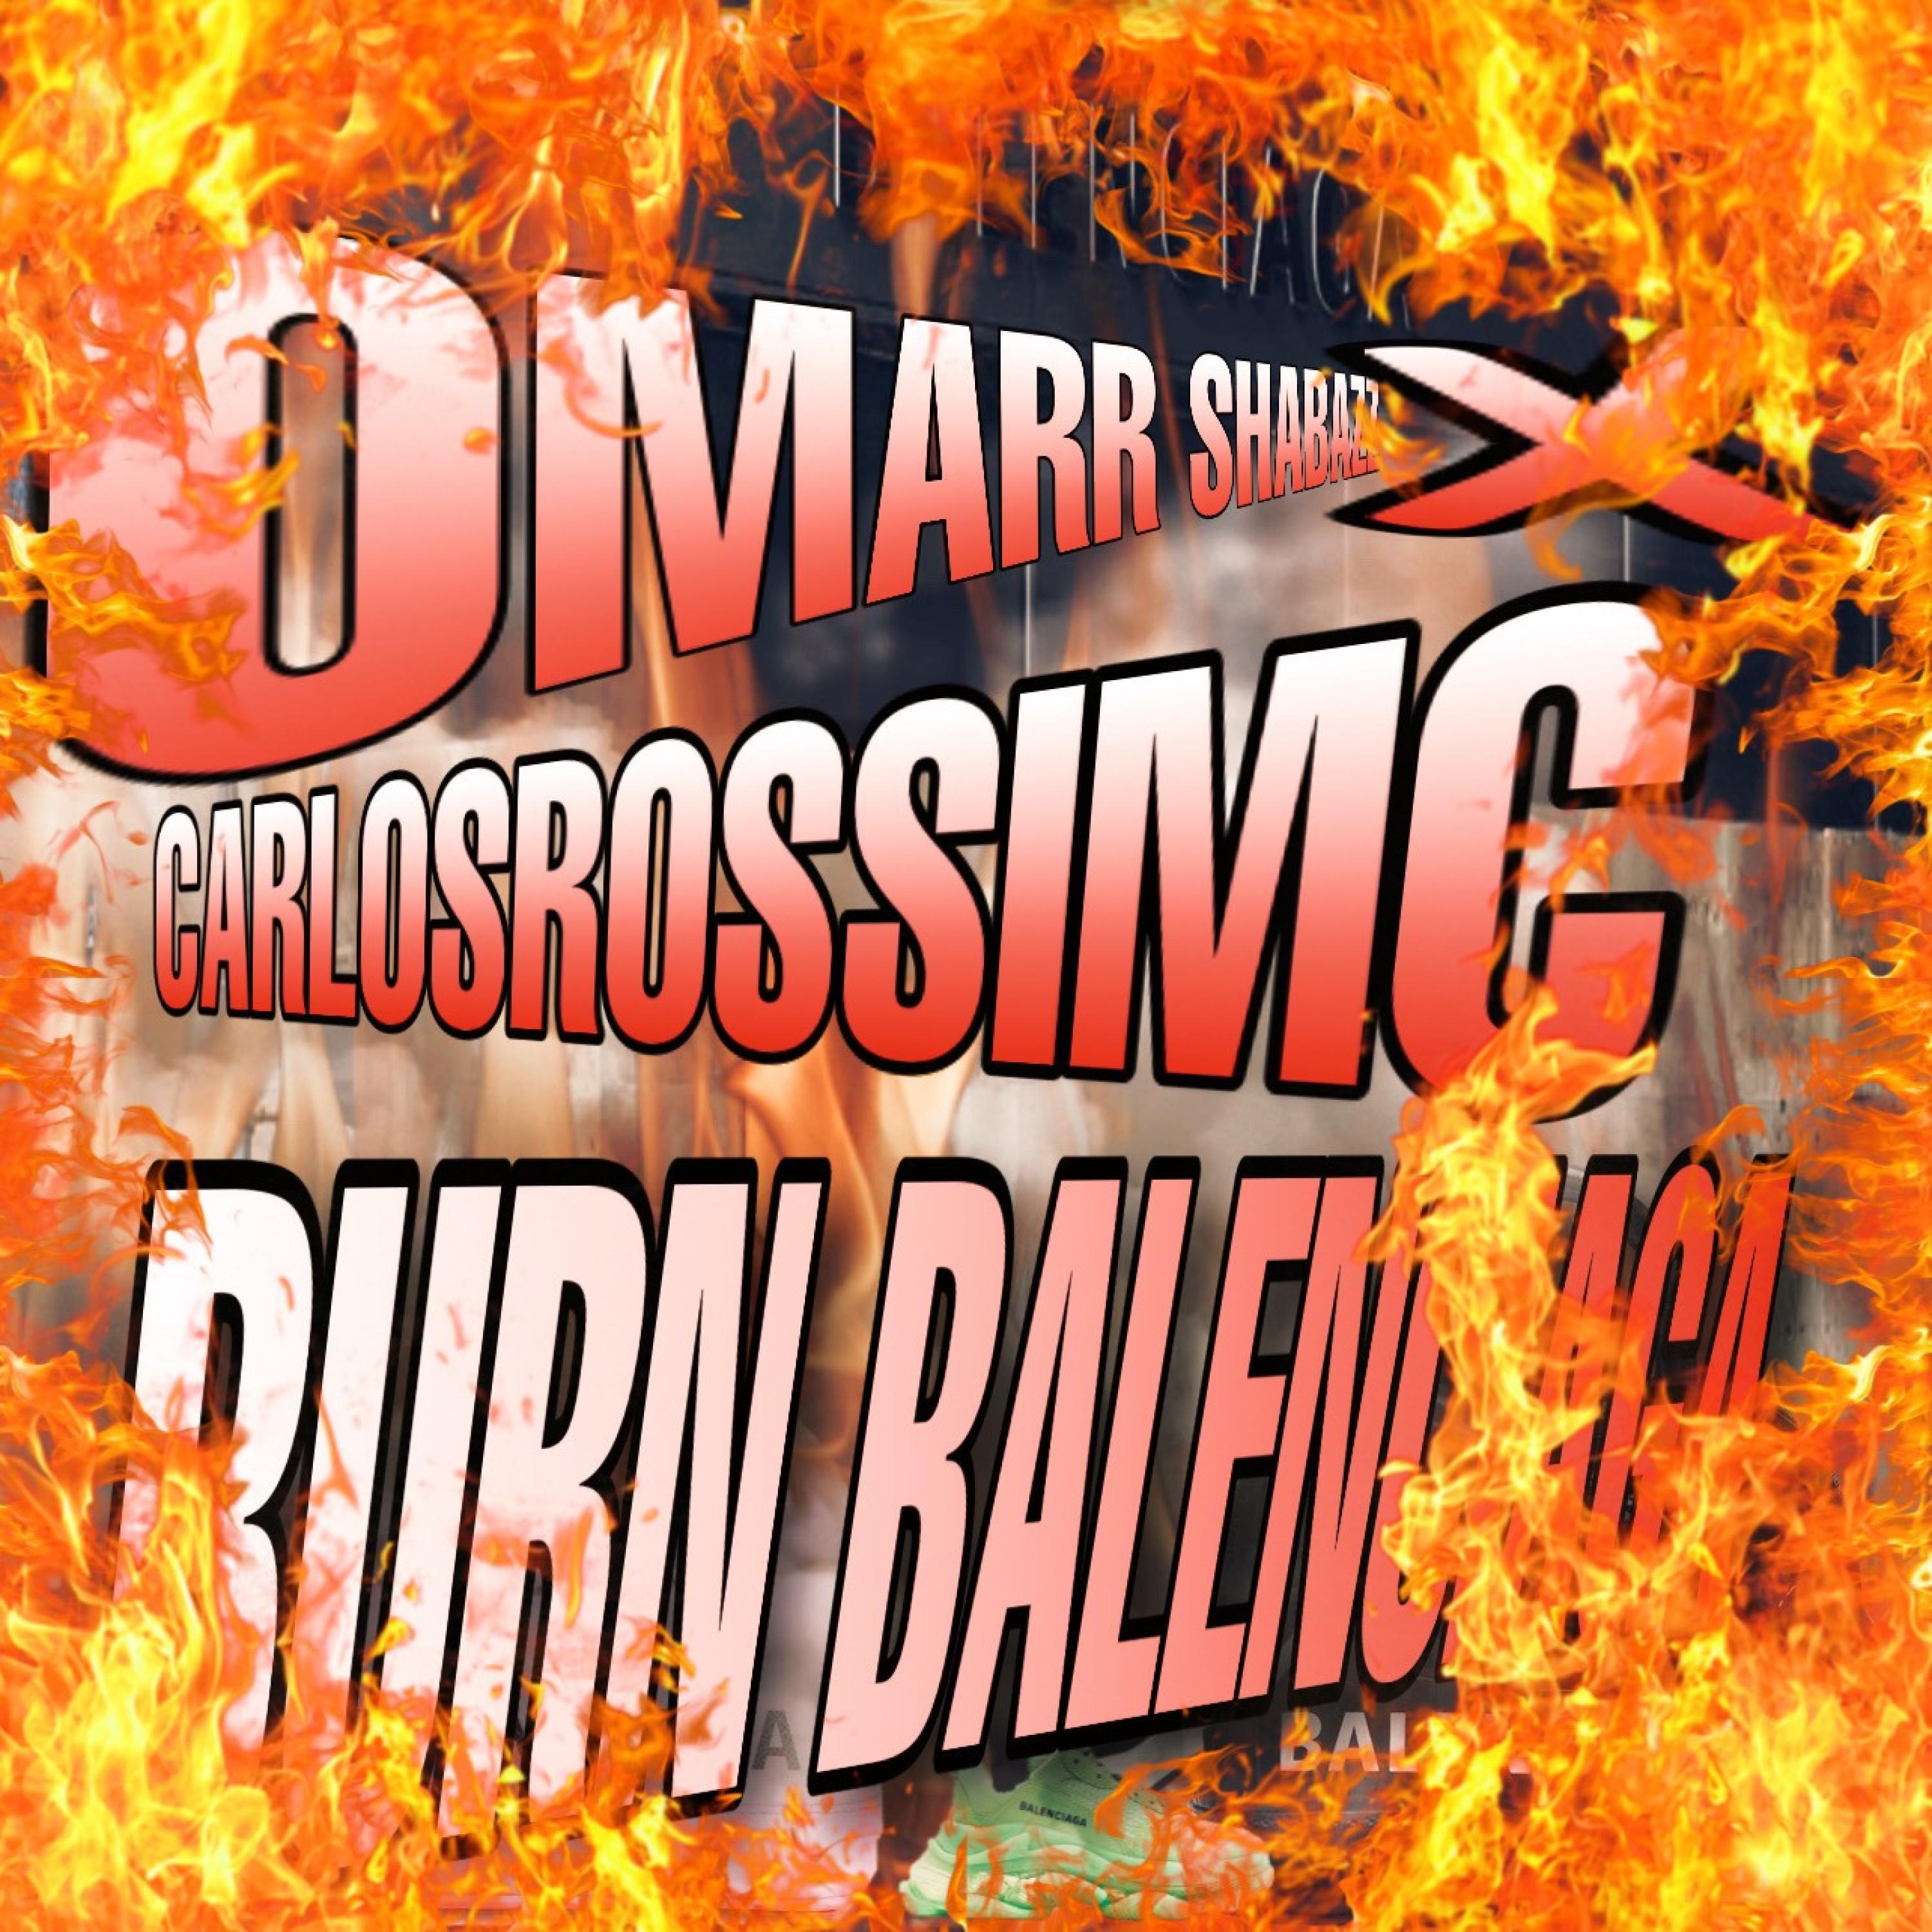 Omarr Shabazz - Burn Balenciaga (feat. CarlosRossiMC)